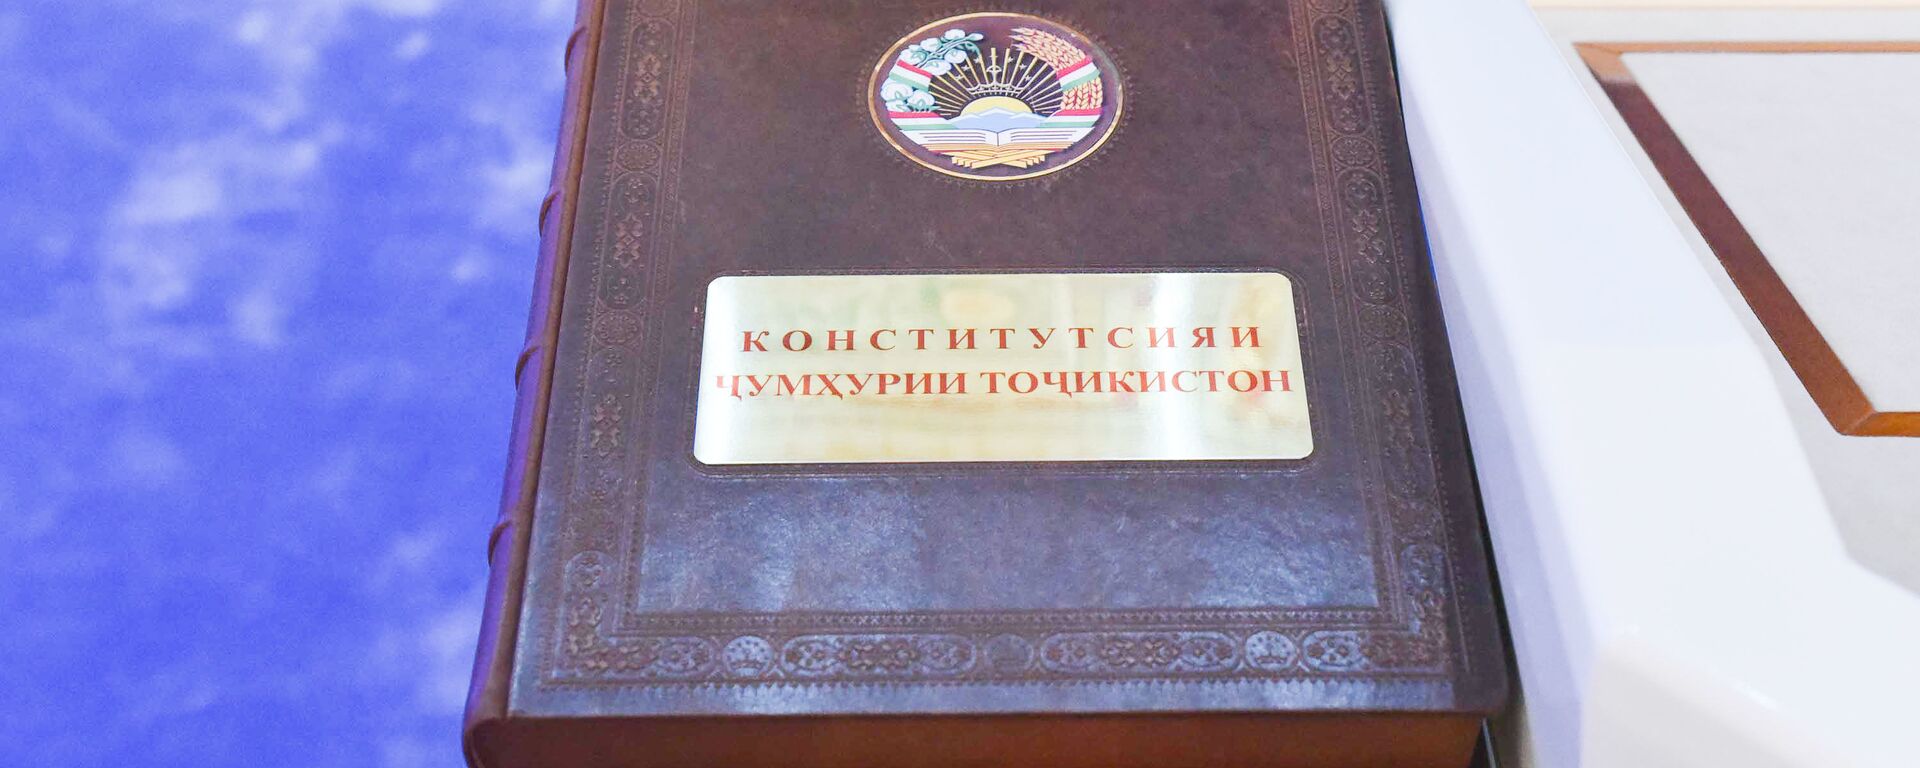 Конституция республики Таджикистан - Sputnik Таджикистан, 1920, 05.11.2021